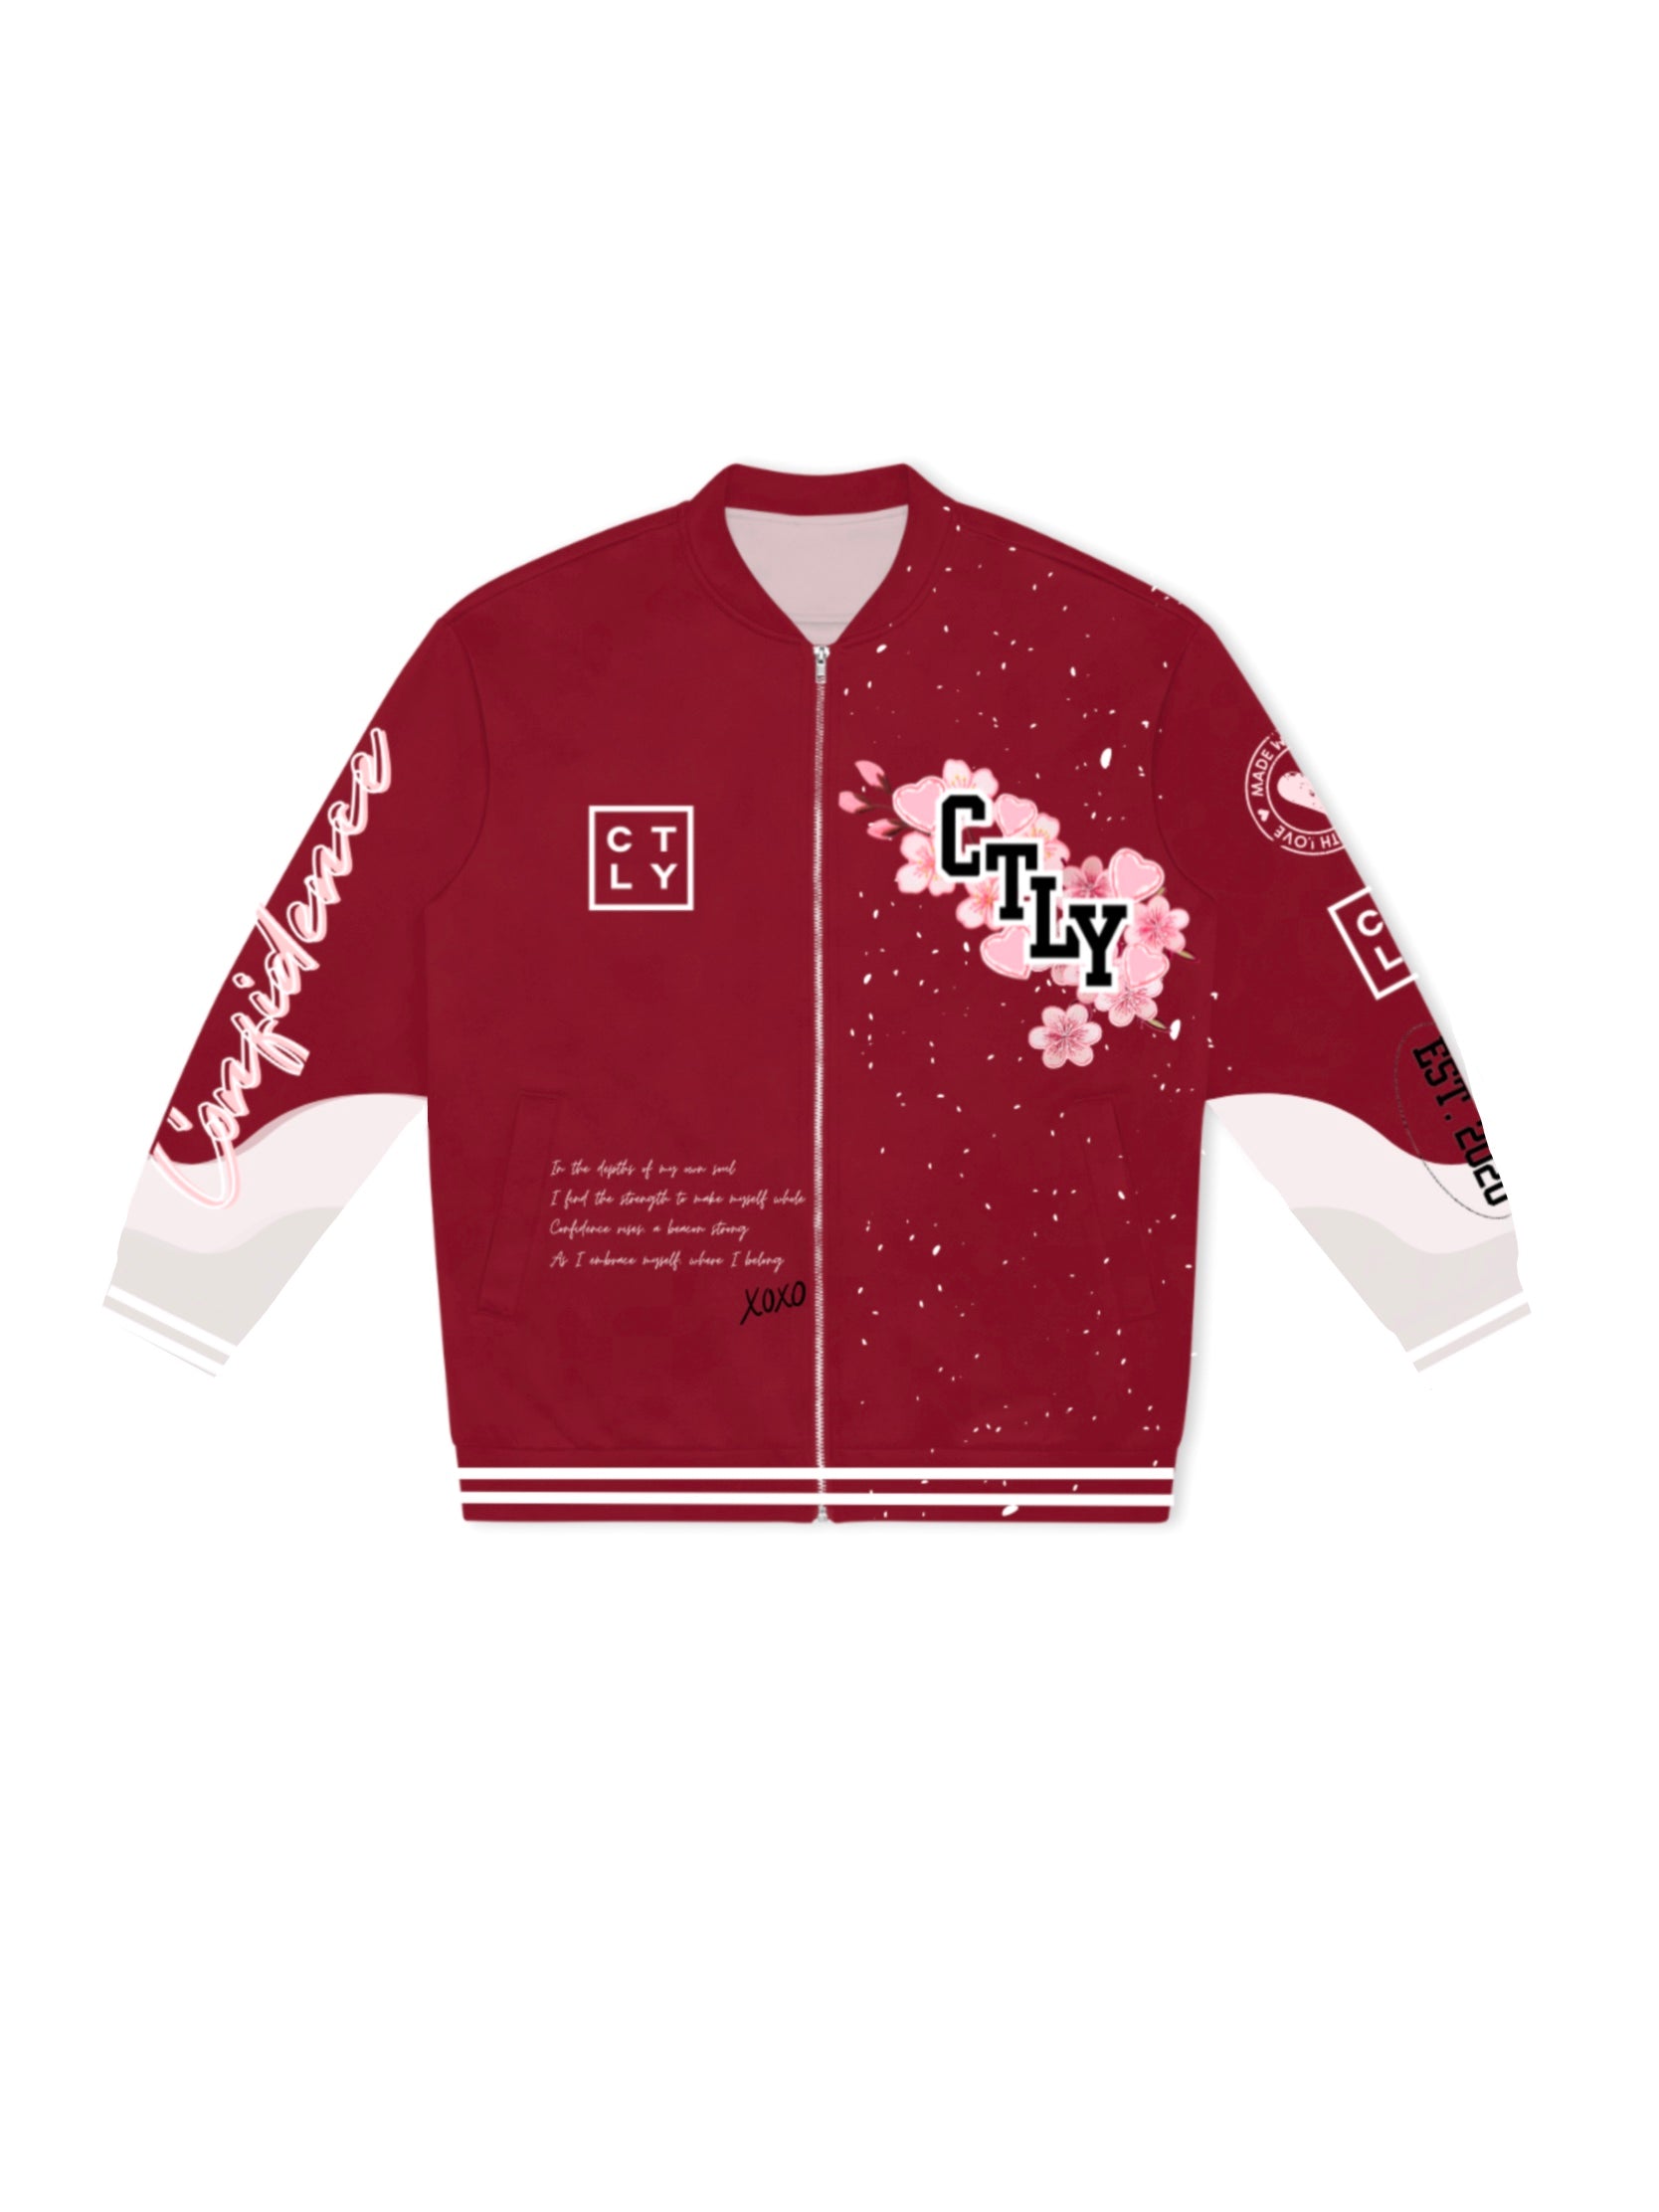 CTLY Cherry Blossom Unisex Bomber Jacket